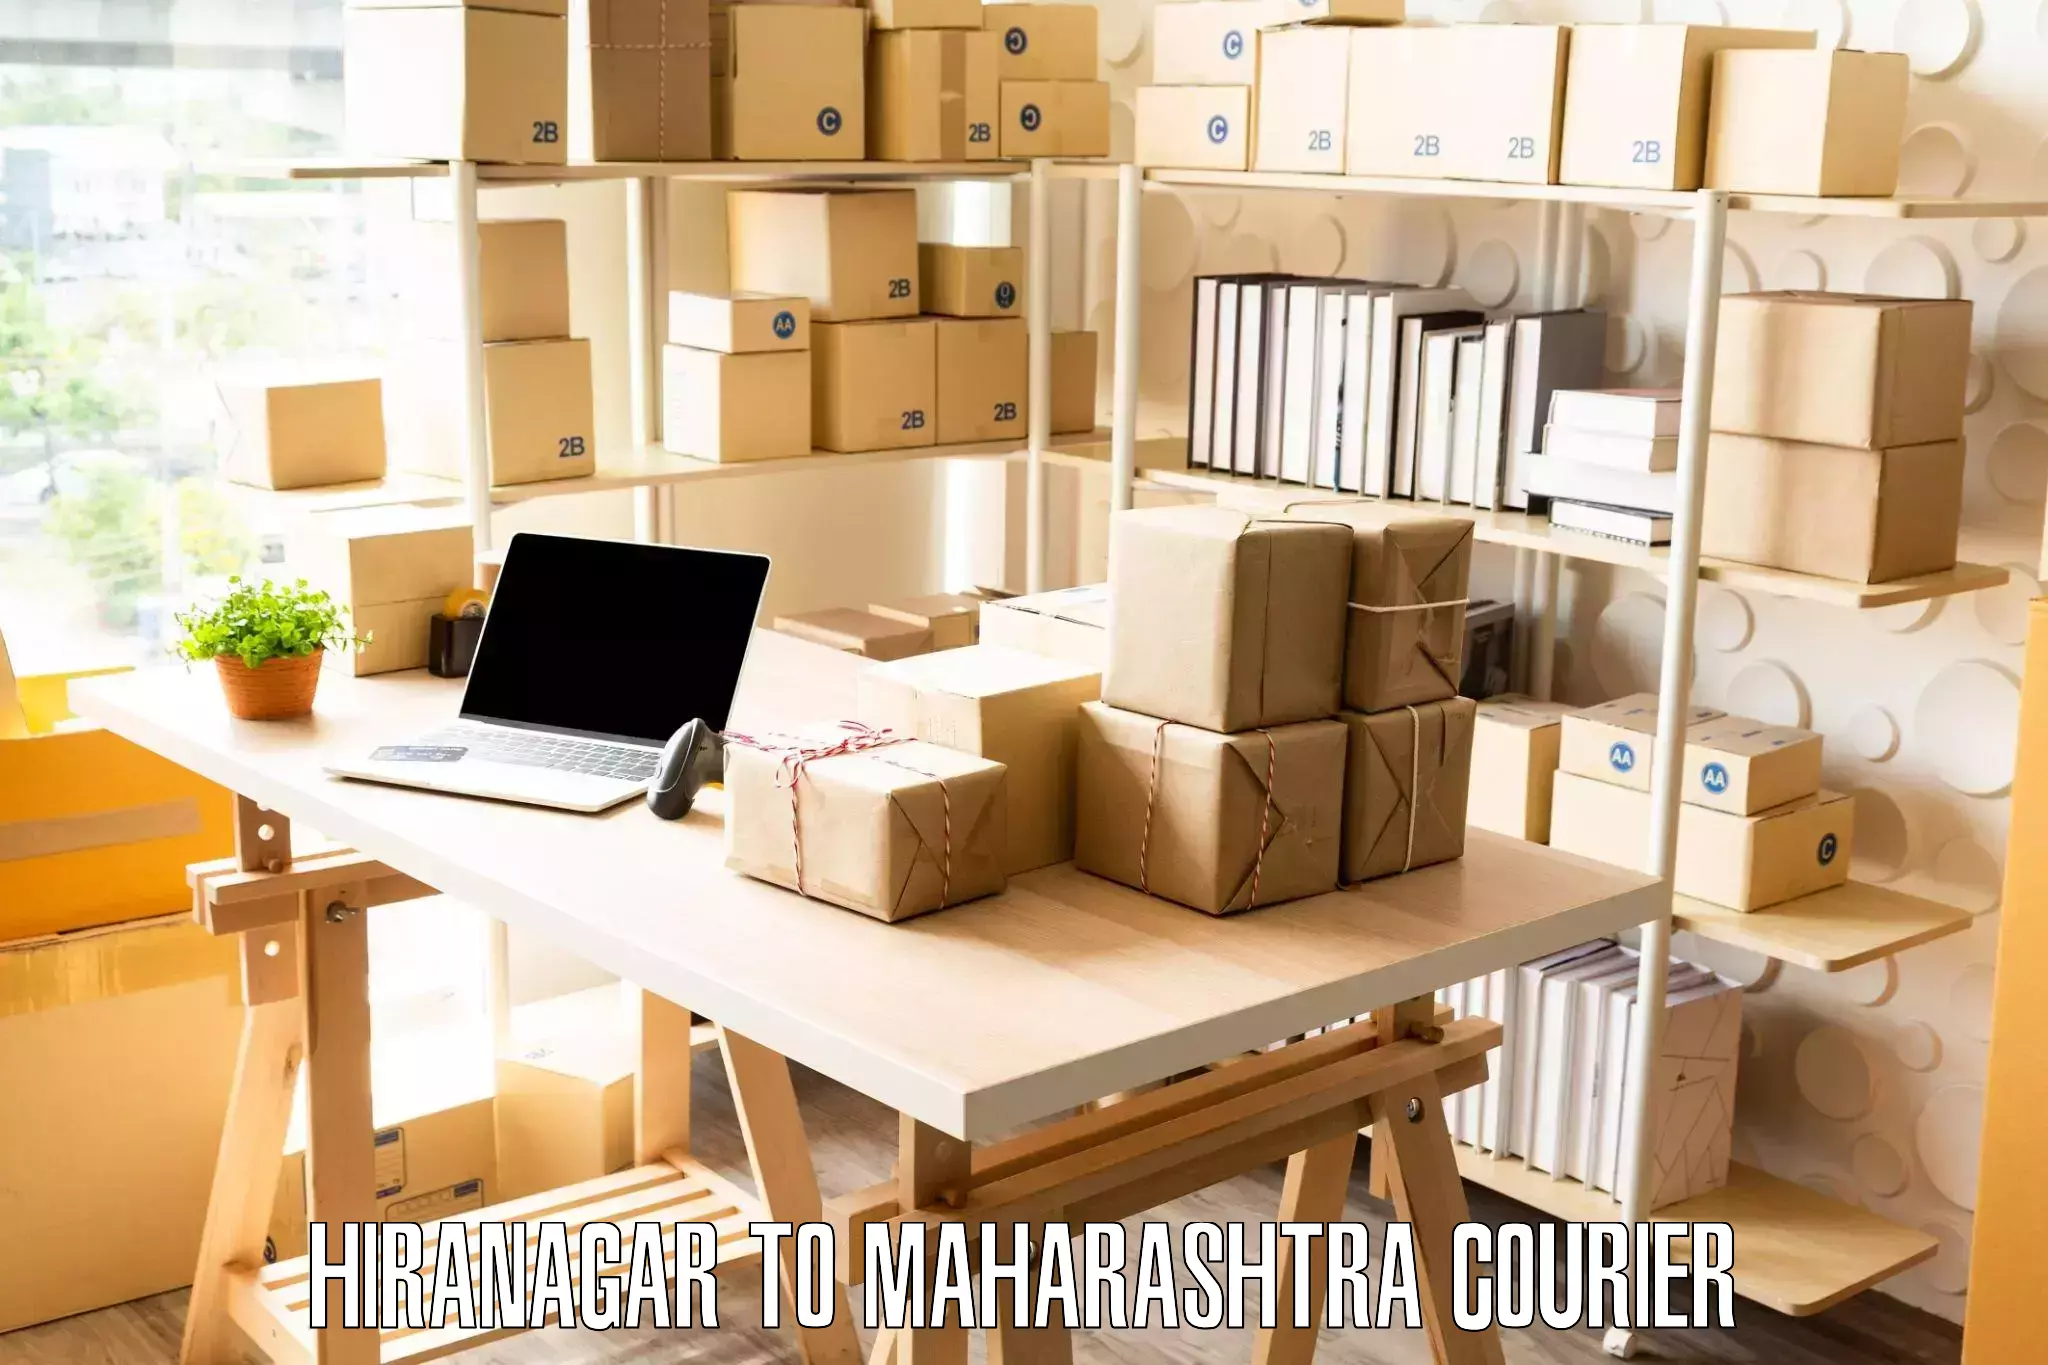 Hassle-free relocation Hiranagar to Maharashtra